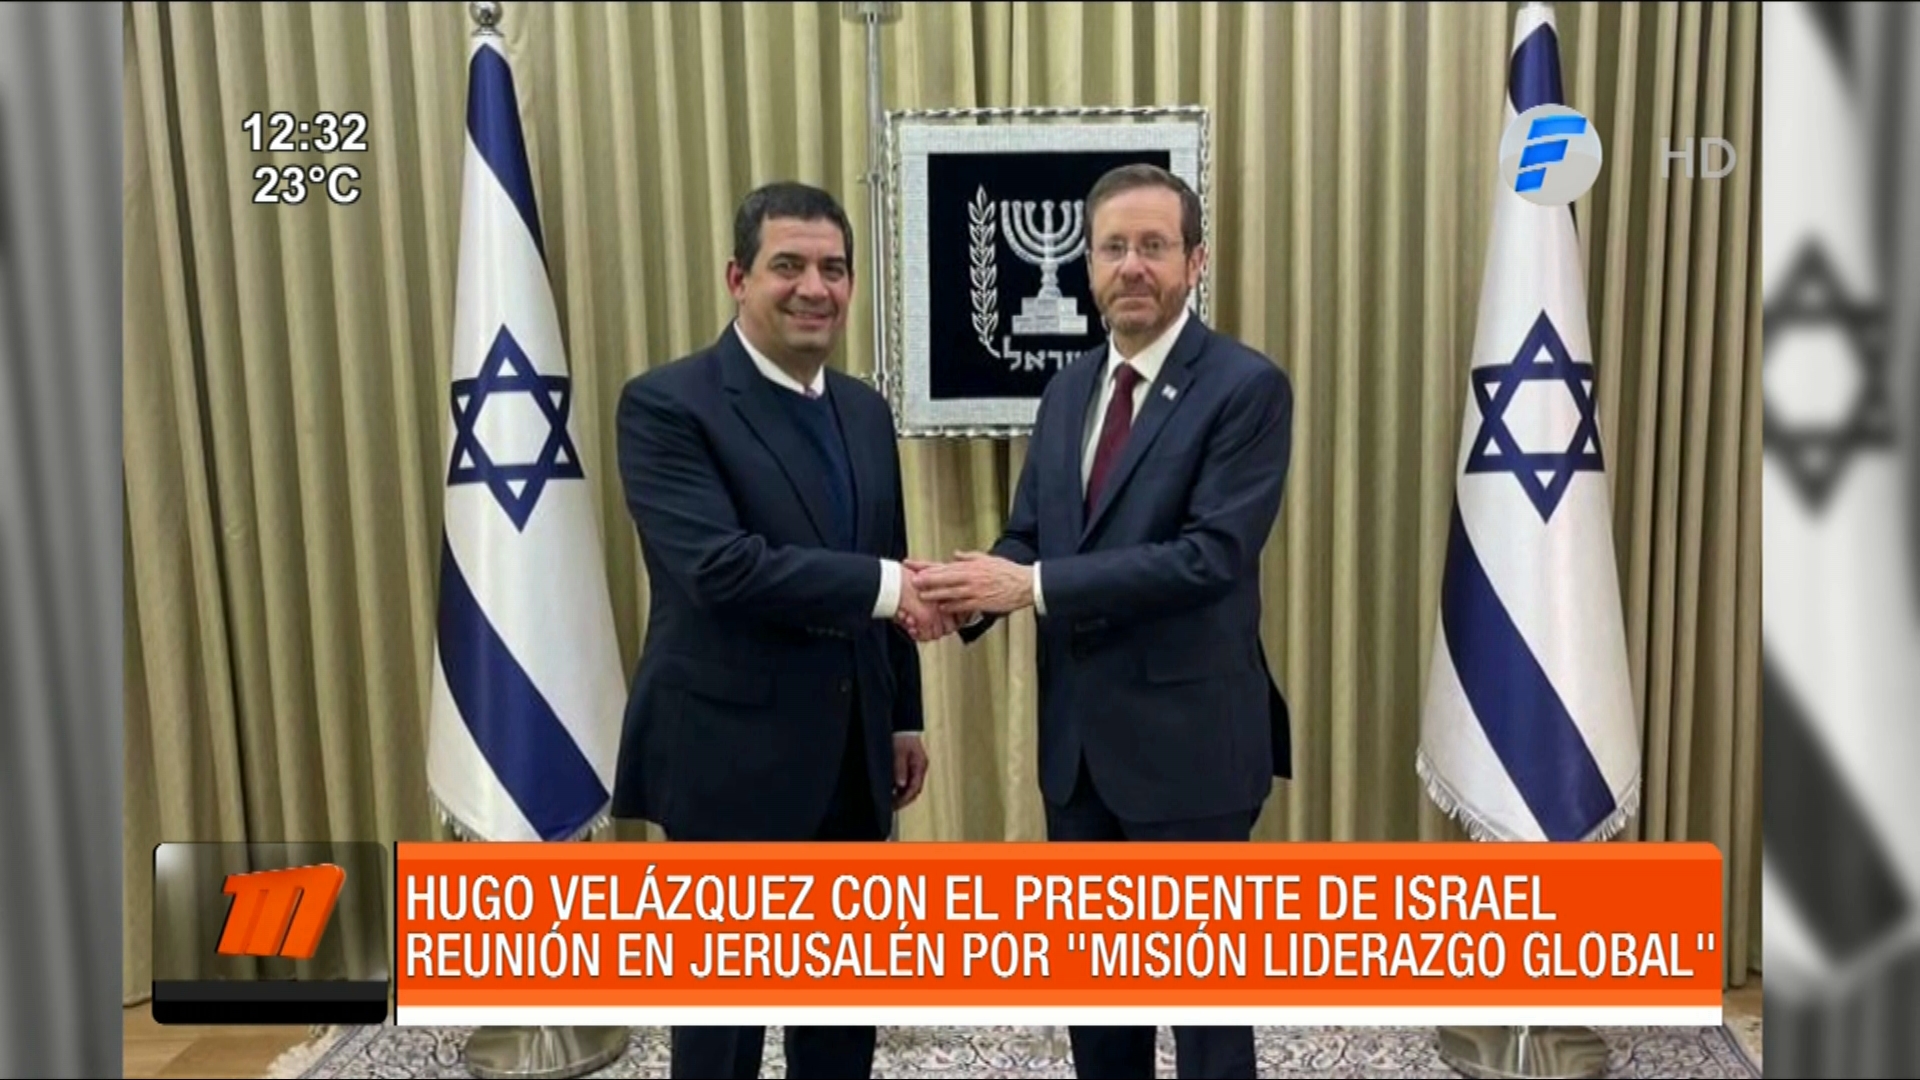 Telefuturo on Twitter: "Hugo Velázquez con el presidente de Israel. El mismo mantuvo una reunión en Jerusalén por ''Misión Liderazgo Global''. 🔴EN VIVO: https://t.co/pASLMhm15D #TelefuturoPy #MeridianoPy #VacunarseNoCuesta https://t.co/XkRnhtV6qV ...